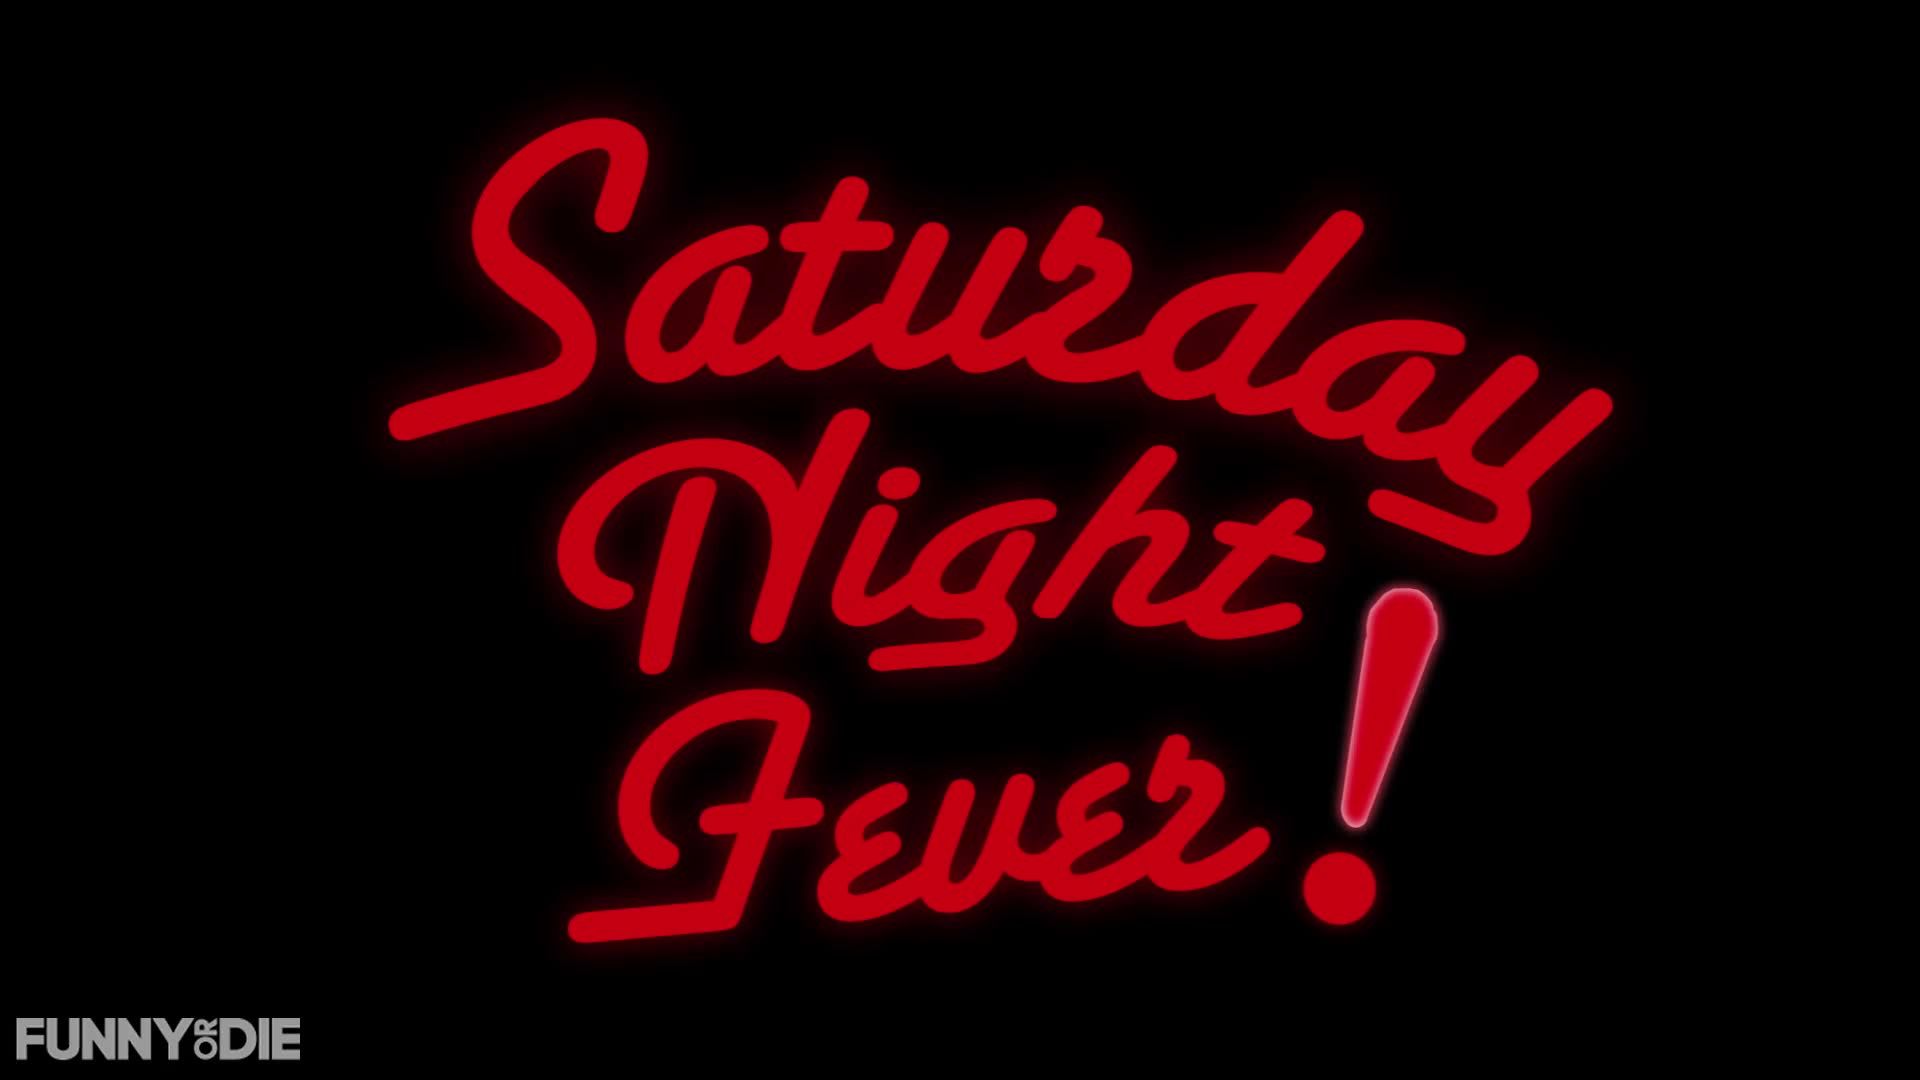 Saturday Night Fever Night Fever Wallpaper 39818420